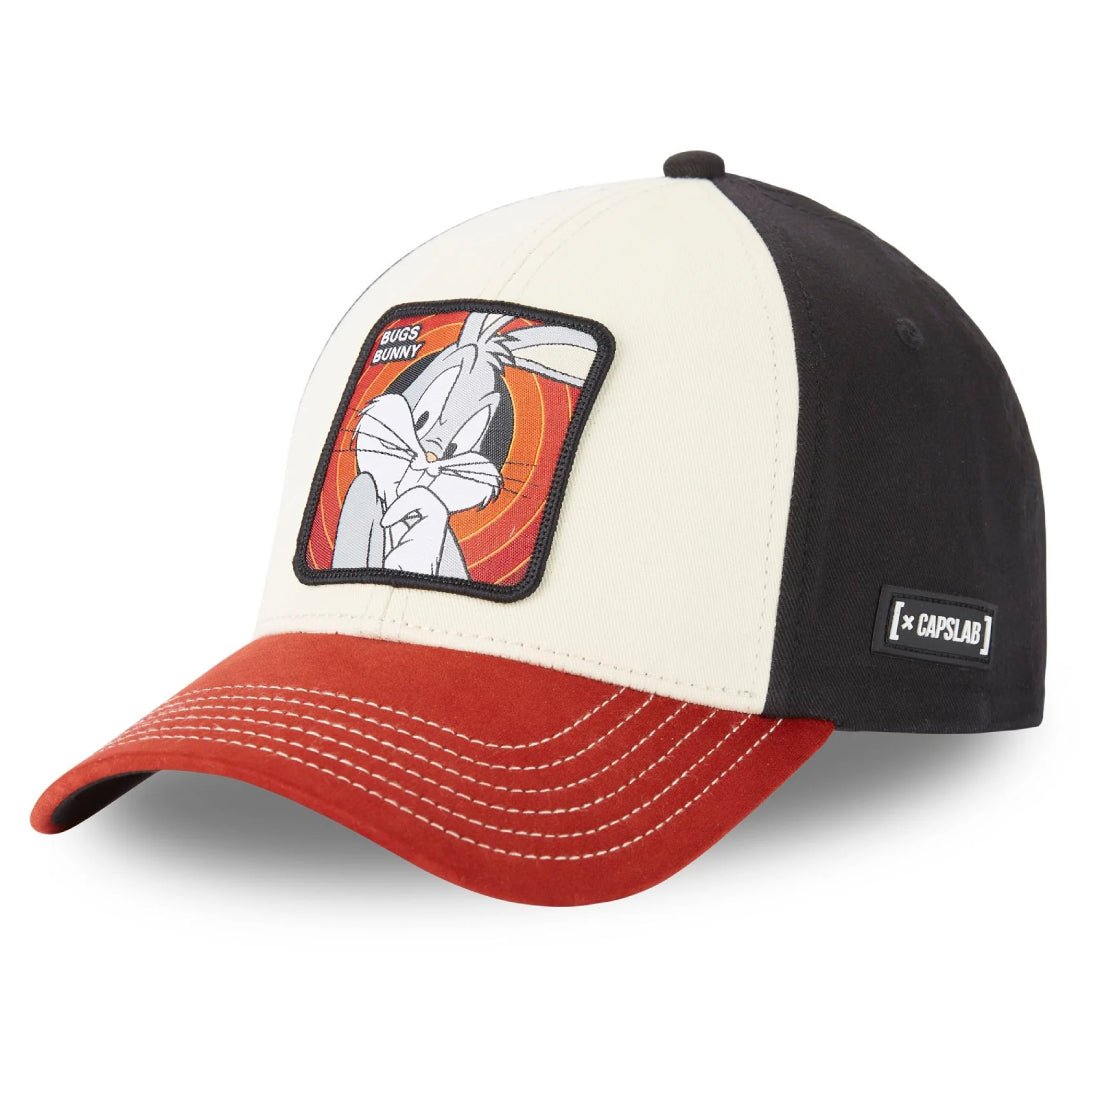 Queue Caps Bugs Bunny Cap - White - قبعة - Store 974 | ستور ٩٧٤